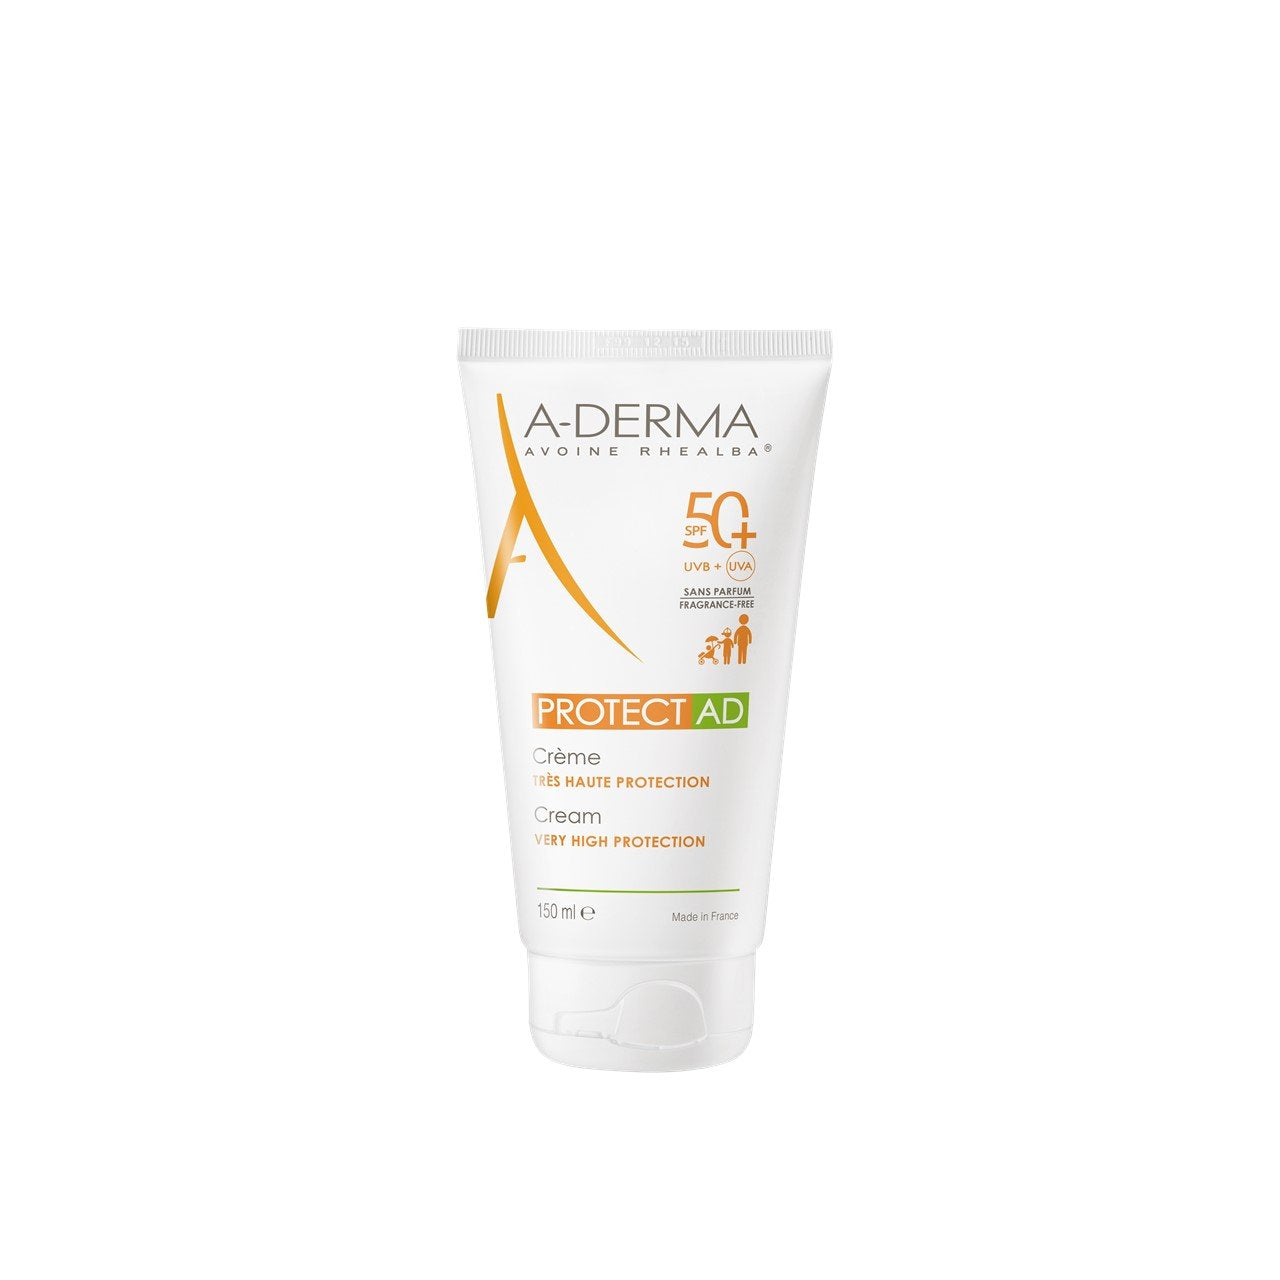 A-Derma Protect AD Crème Haute Protection SPF50+ 150 ml